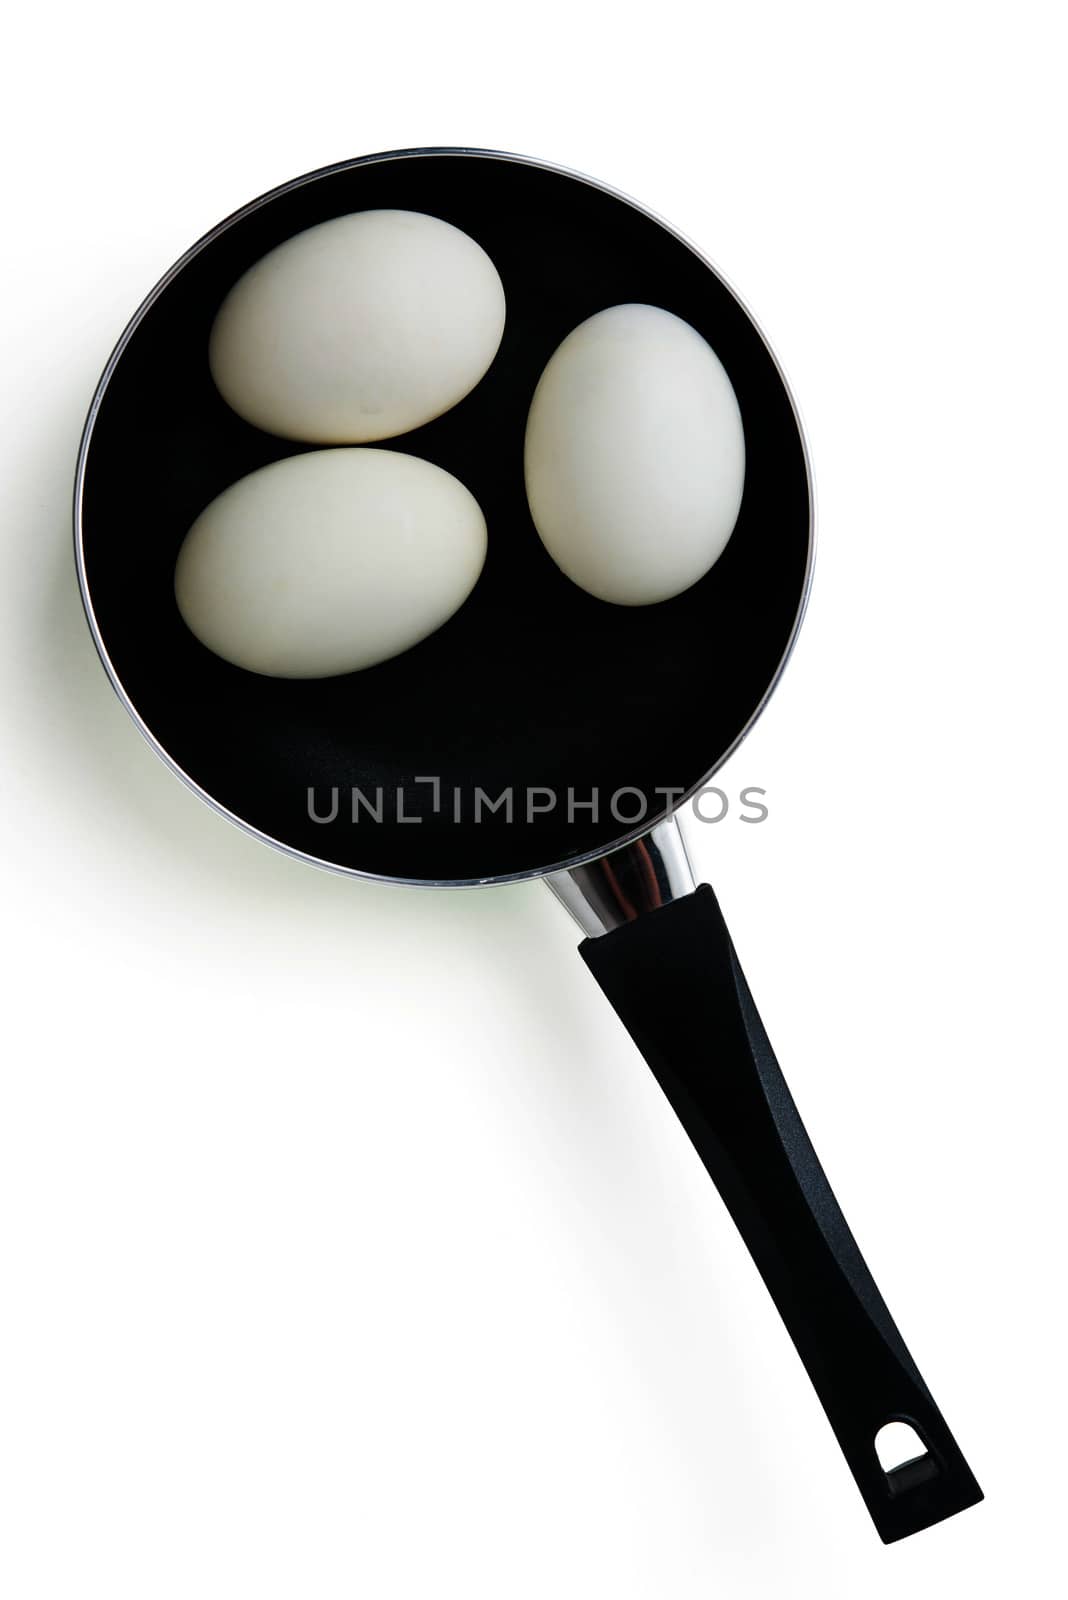 eggs in a pan